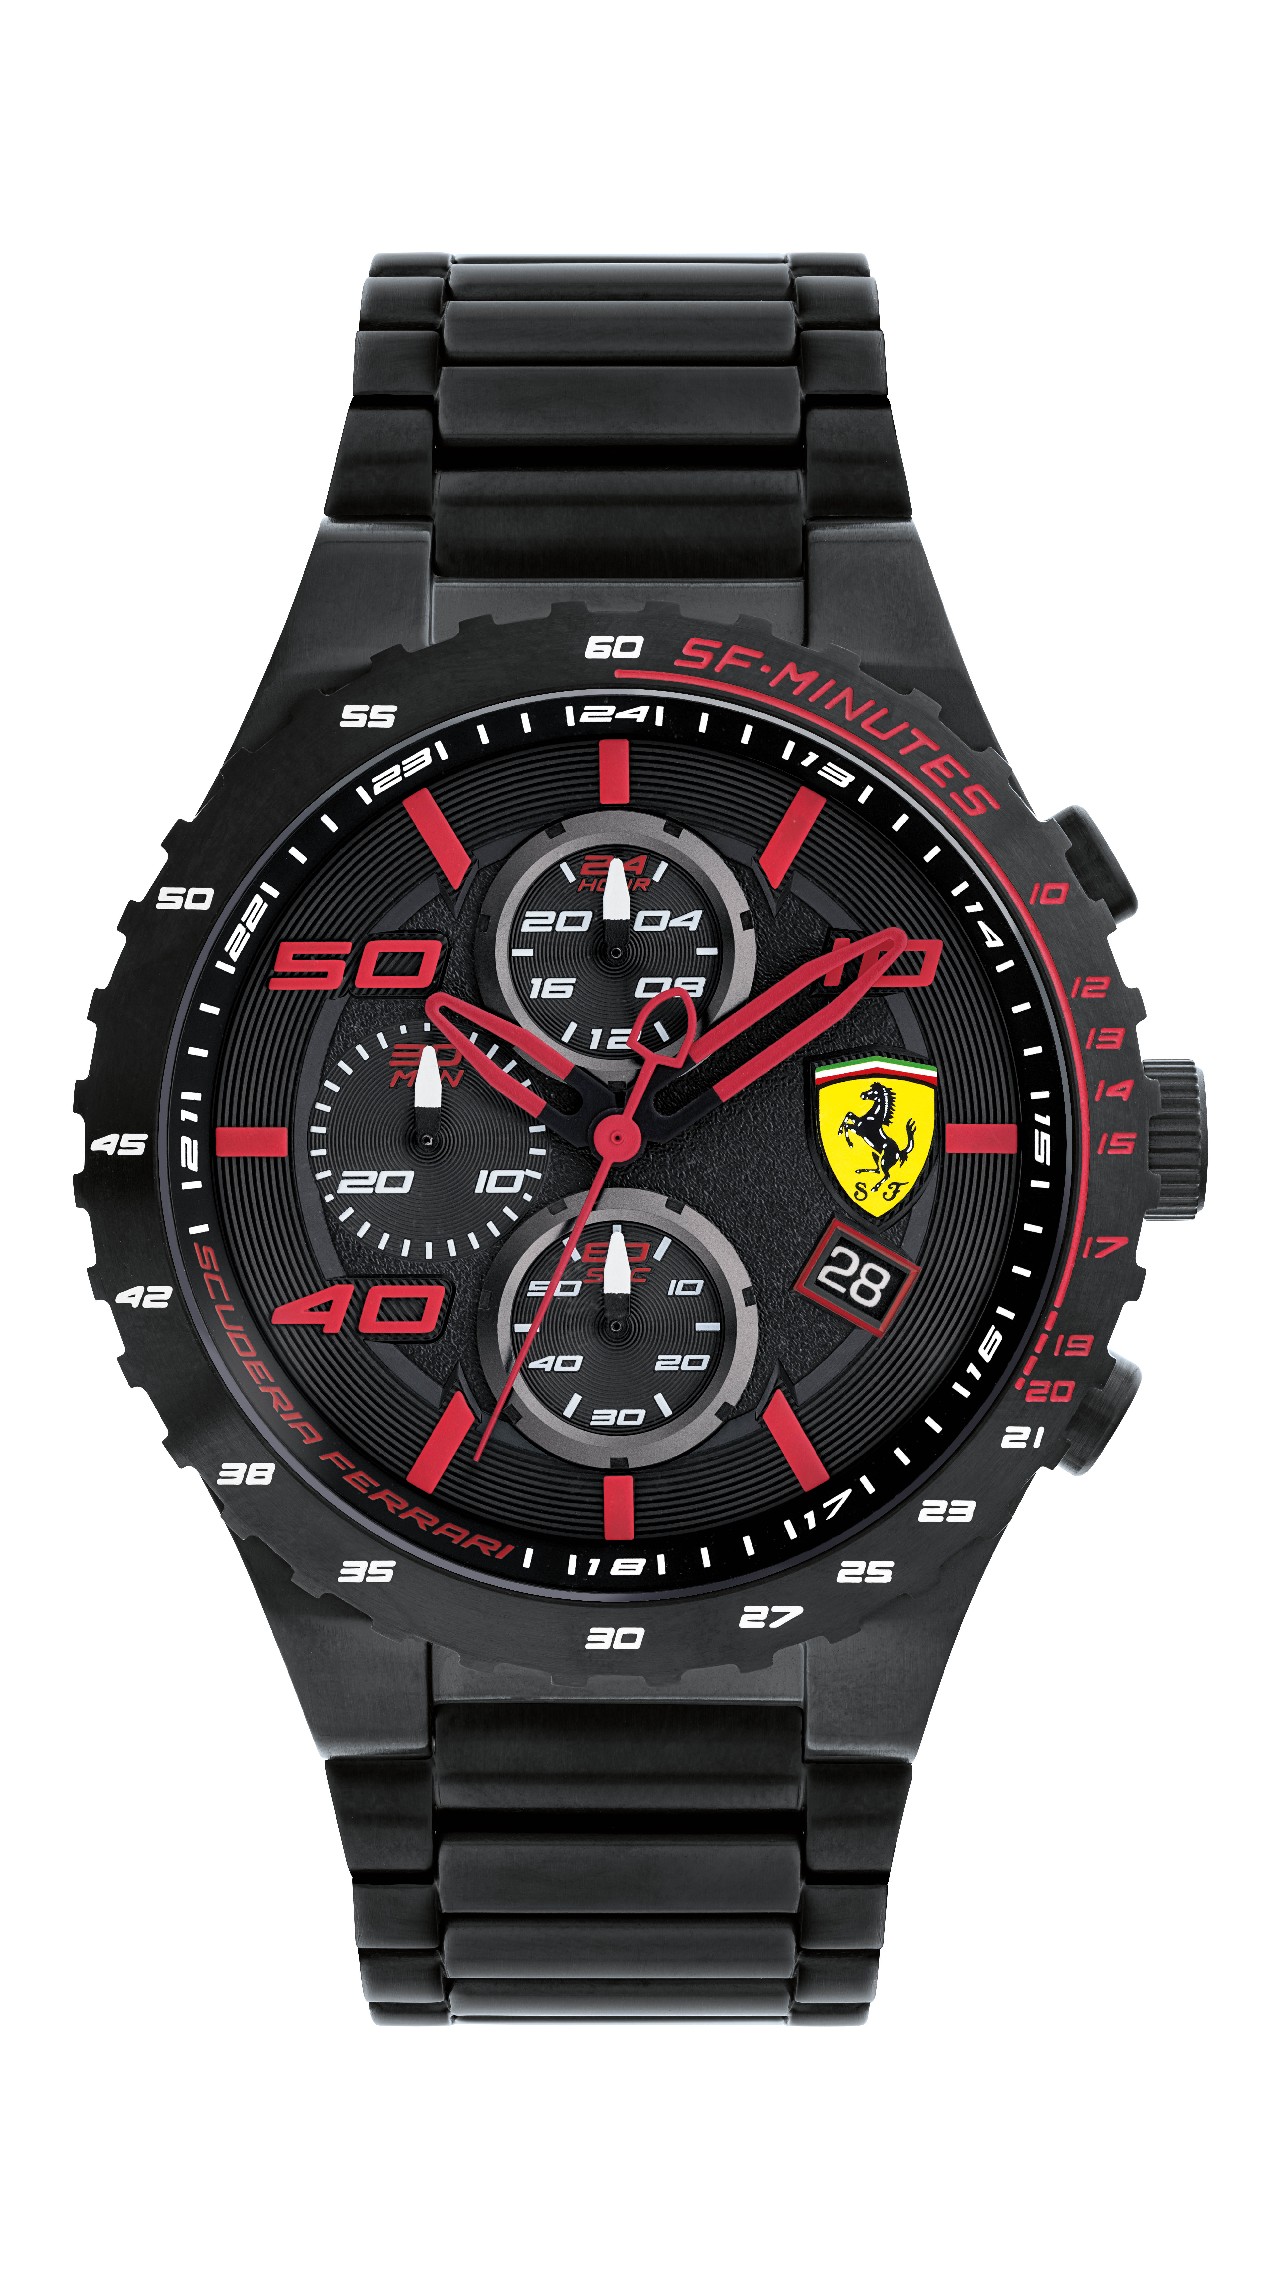 VicenzaOro settembre 2016: la nuova collezione di orologi Scuderia Ferrari per l’autunno inverno 2016 2017